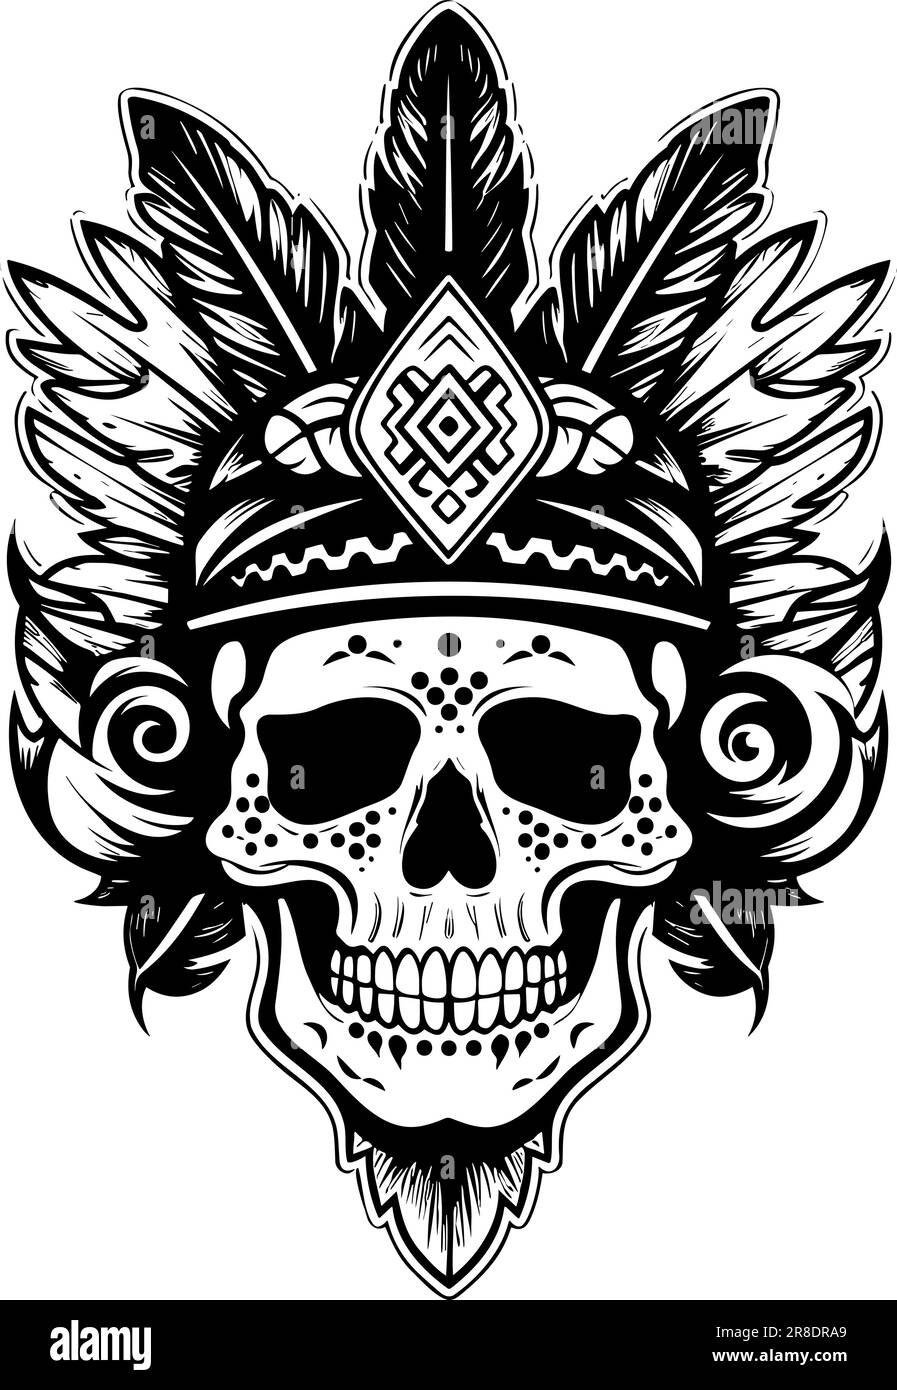 Skull Tribal Tattoo Vector Format Very Stock Vector (Royalty Free)  137600696 | Shutterstock